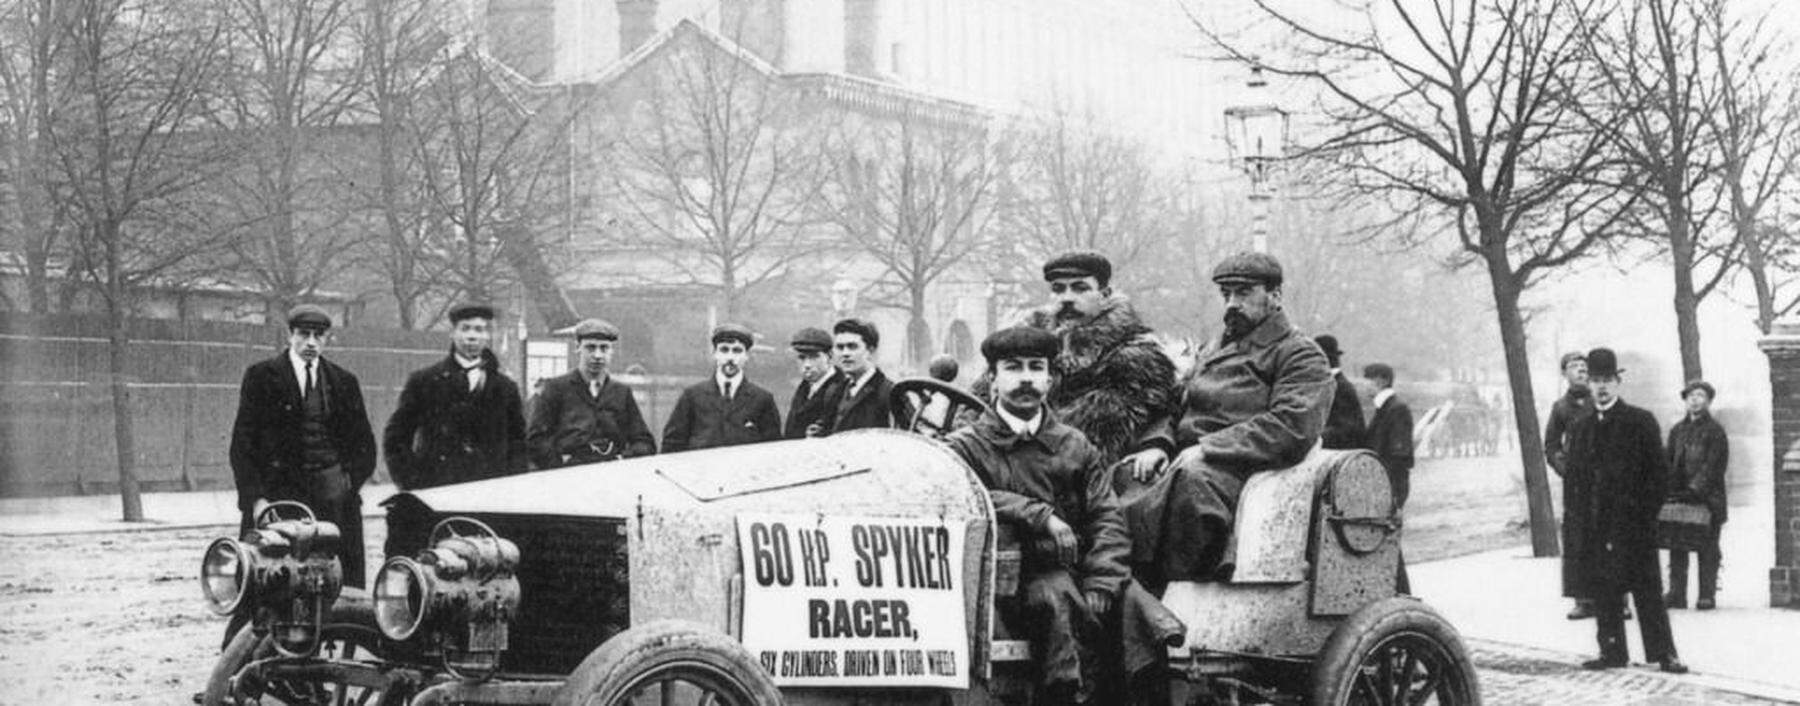 Die Vorzüge des Spyker- Rennwagens von 1903 angepriesen: sechs Zylinder, 60 PS, Allradantrieb!